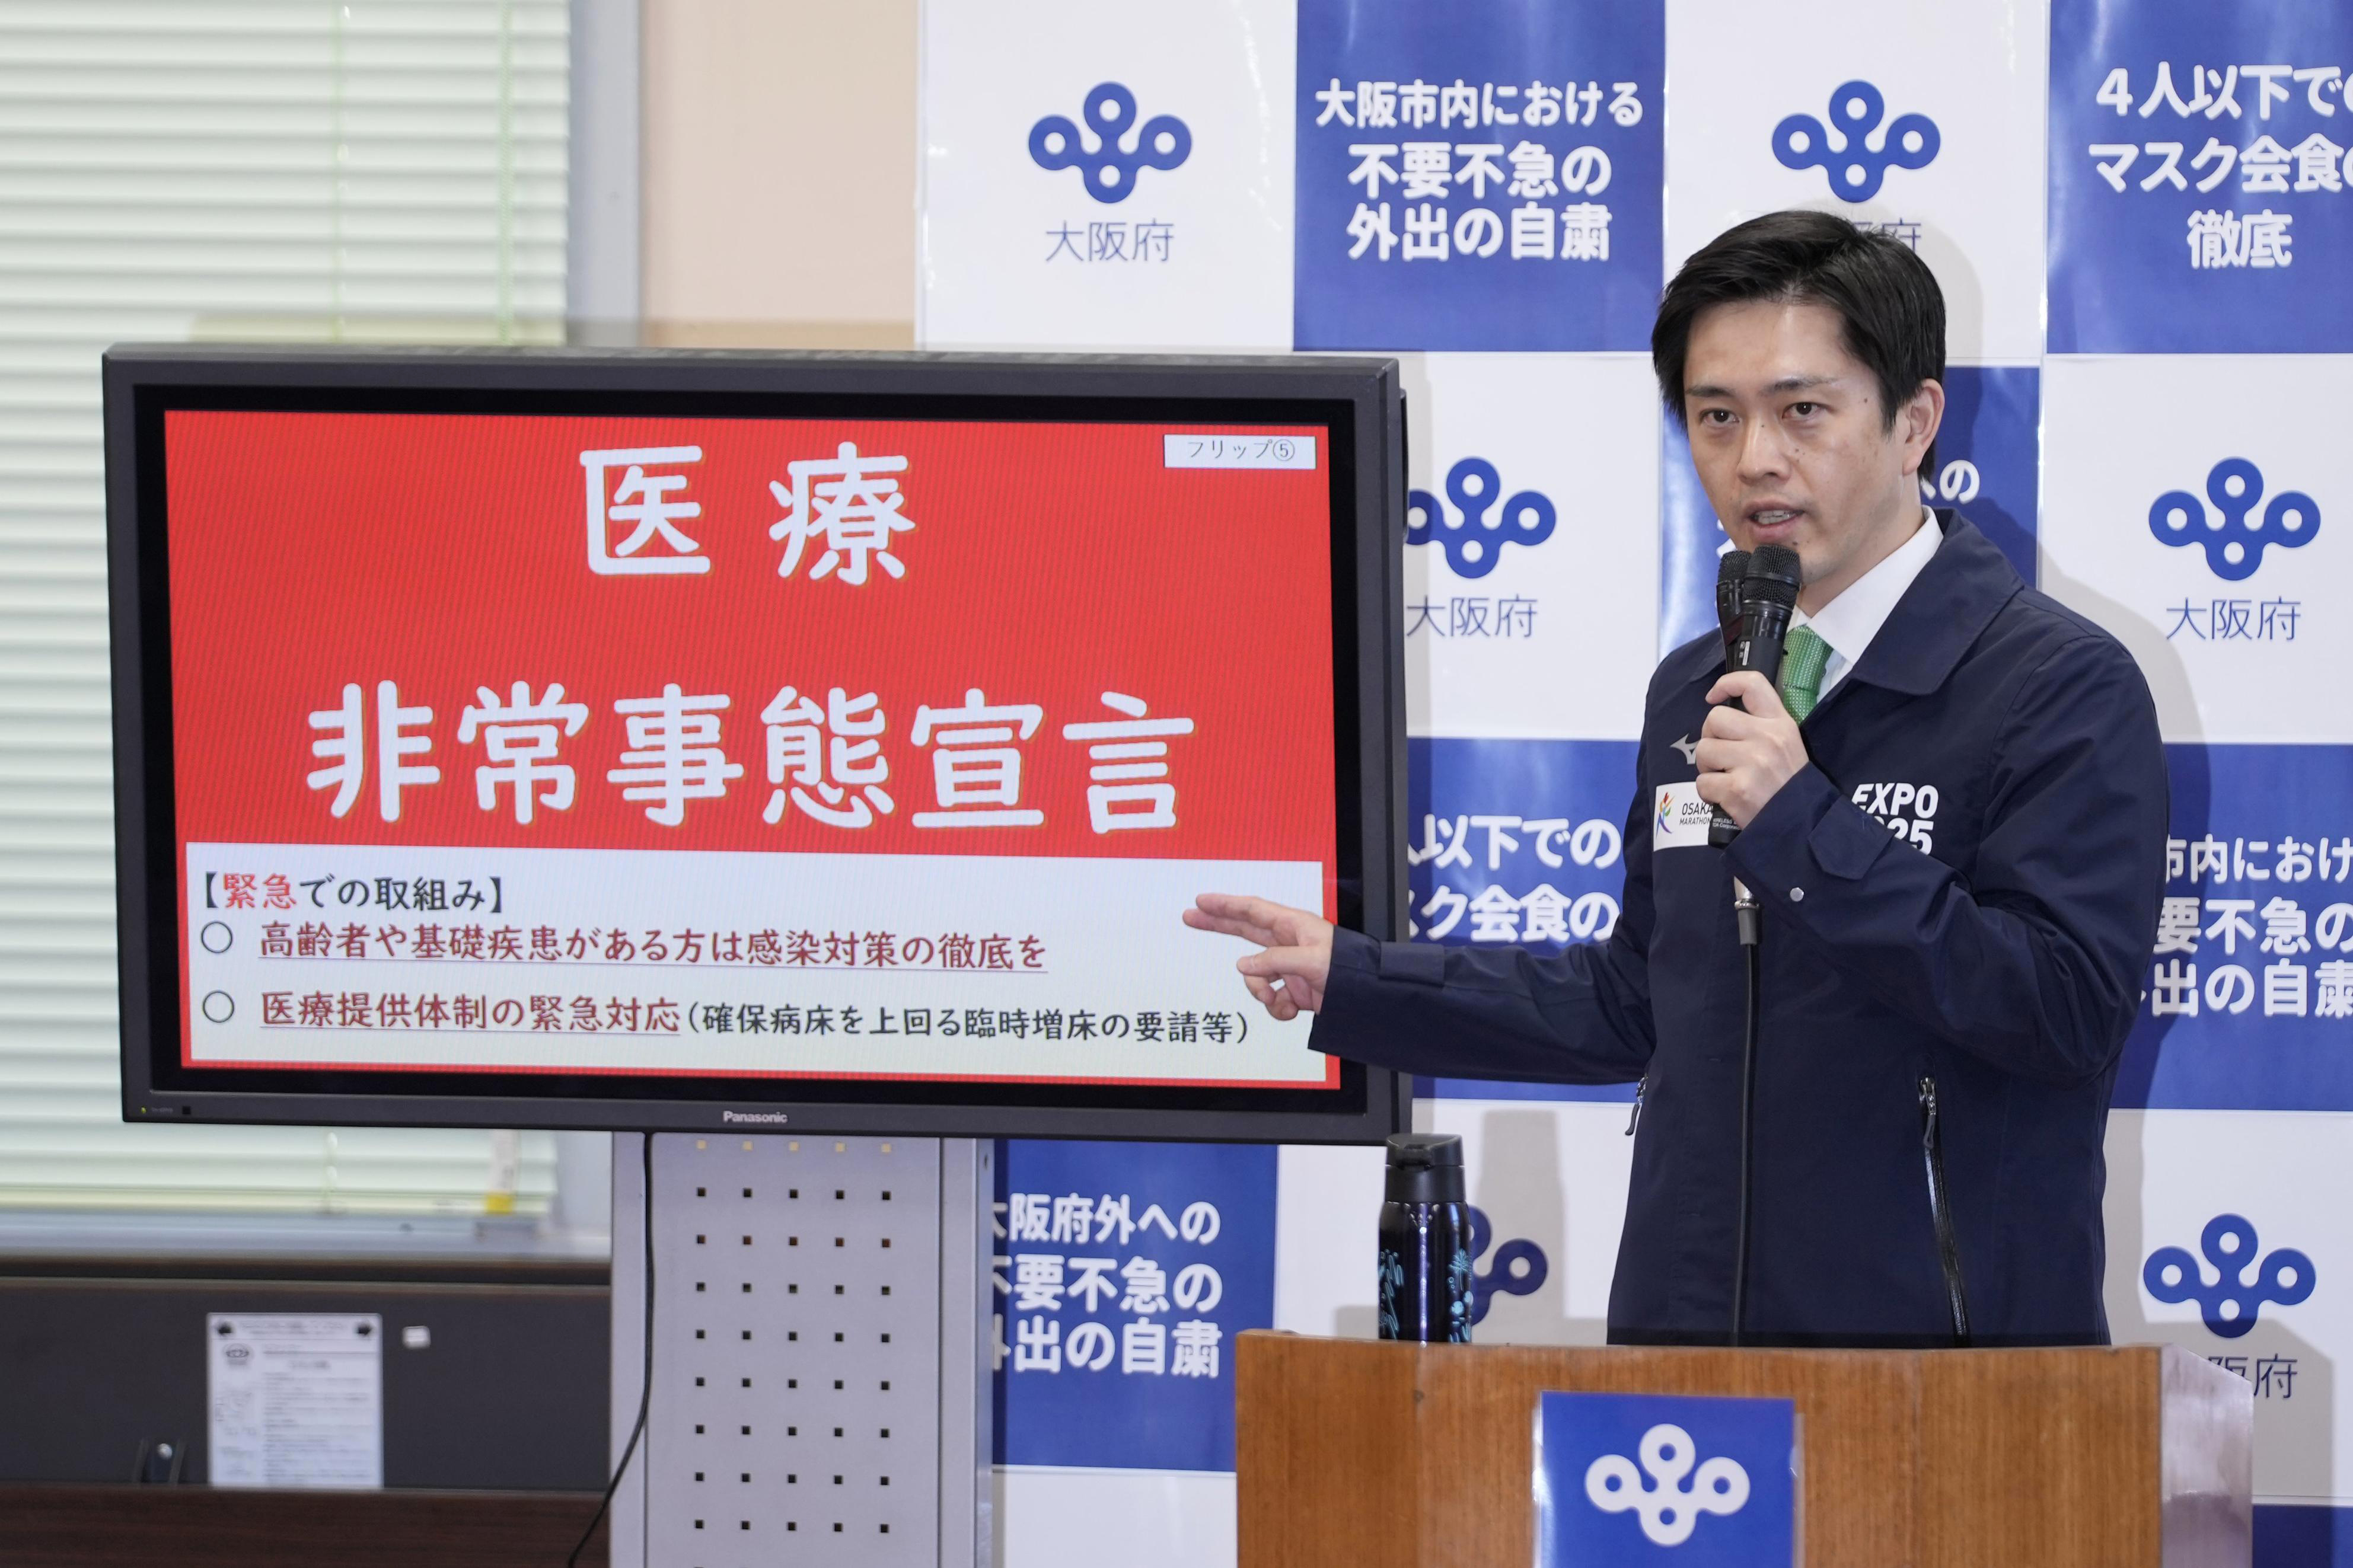 由于疫情急剧蔓延，日本大阪府知事吉村洋文宣布大阪府进入“医疗非常事态”。（美联社照片）

